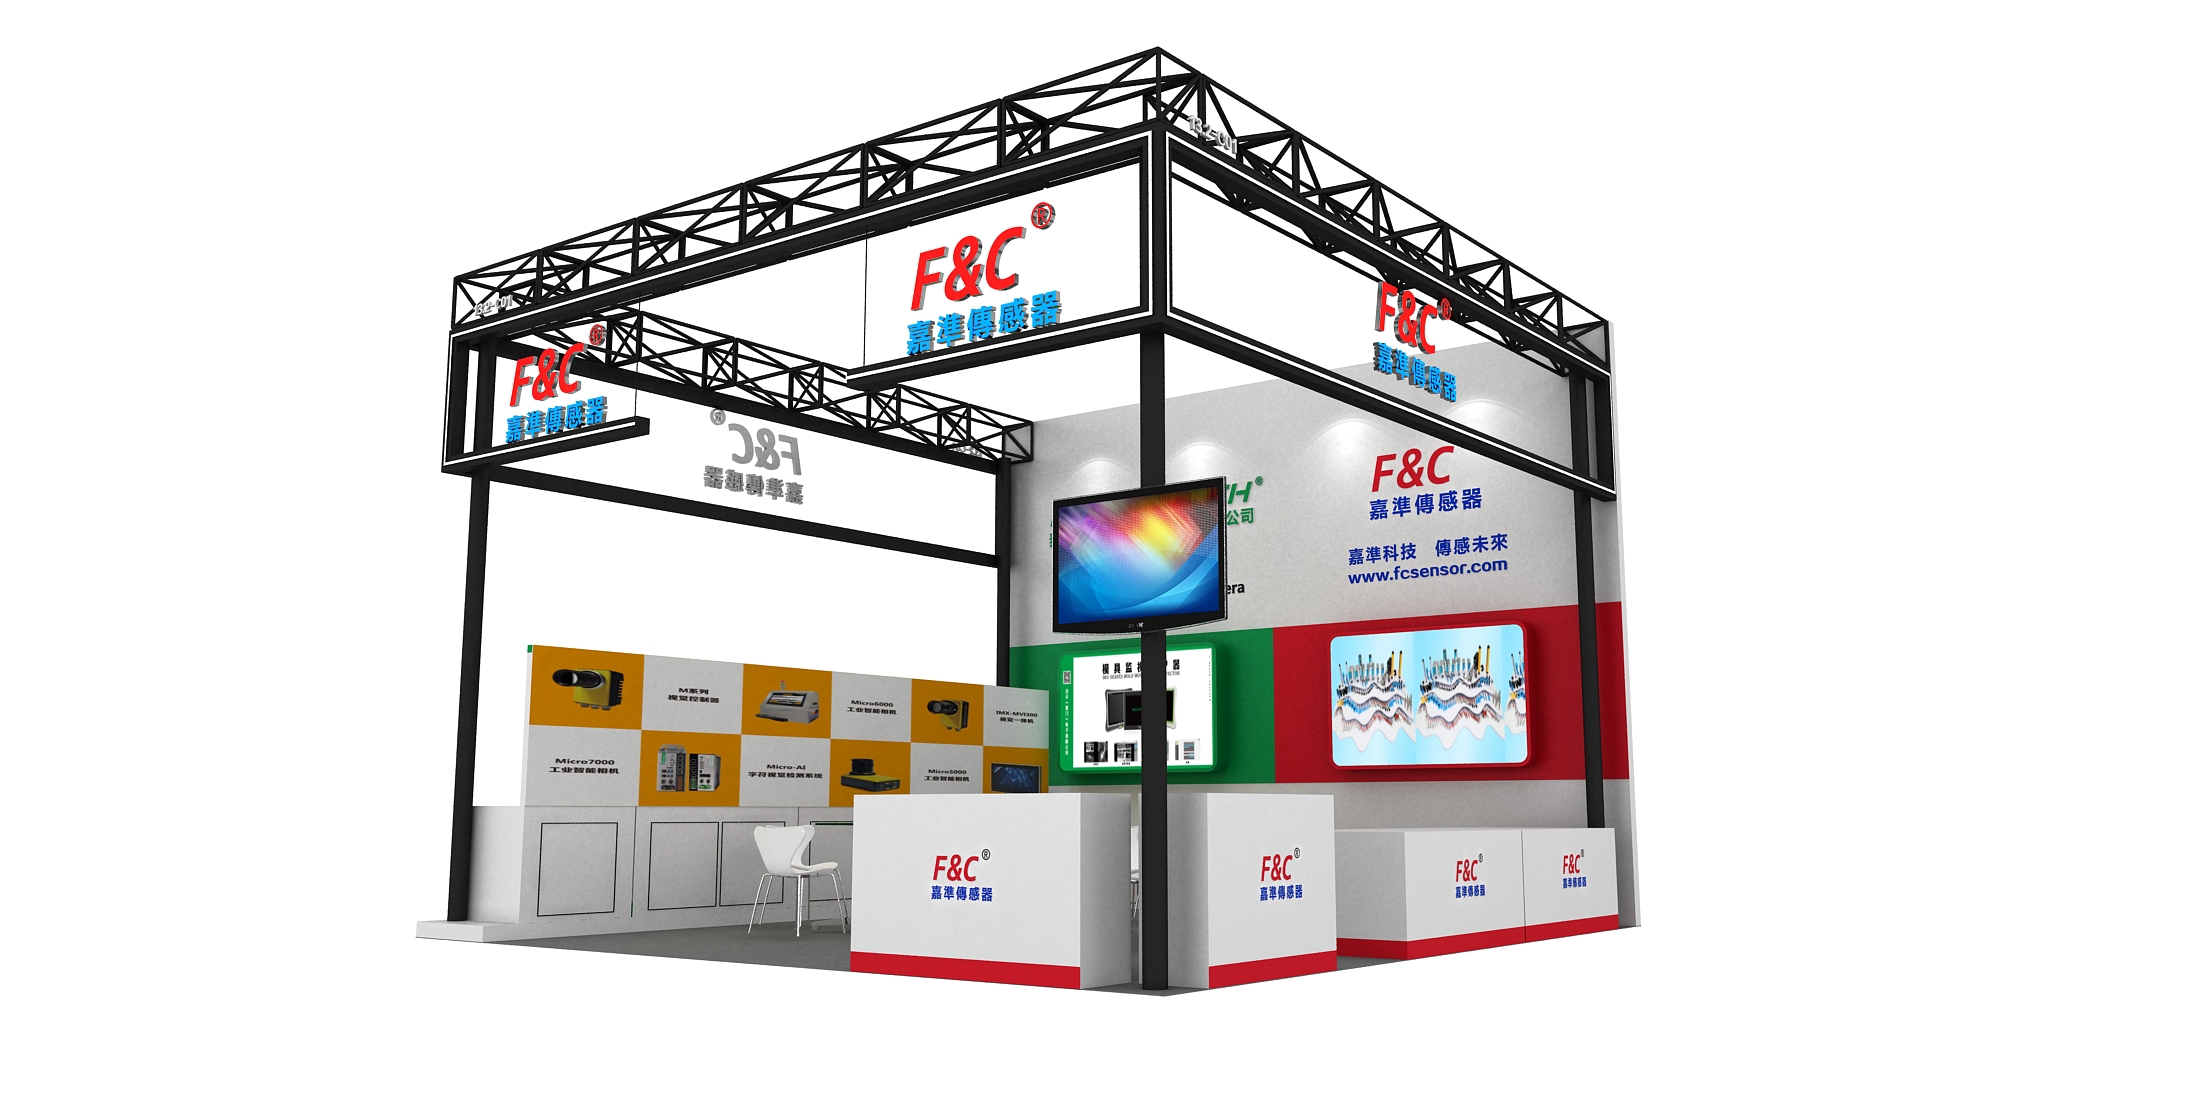 3月3日，F&C嘉准与您相约广州国际工业自动化技术及装备展览会（SIAF），预约到场有礼相送！